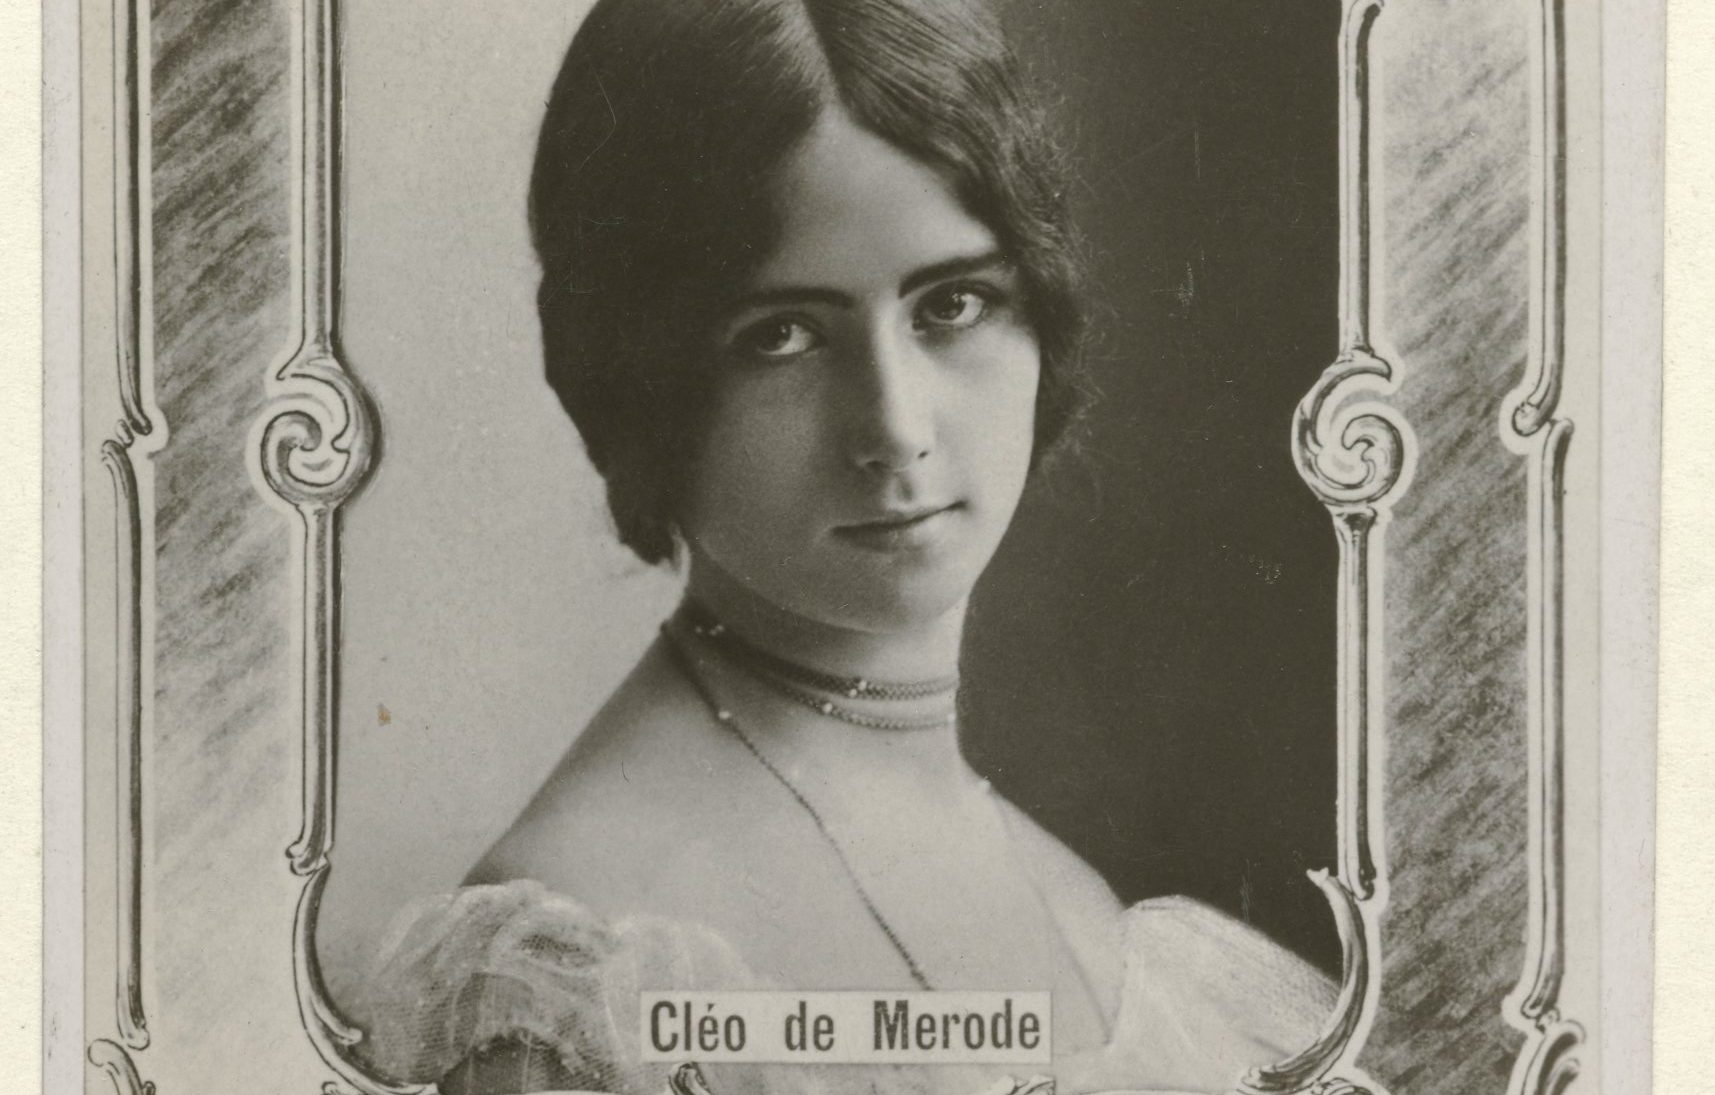 Cleo de Merode Facts